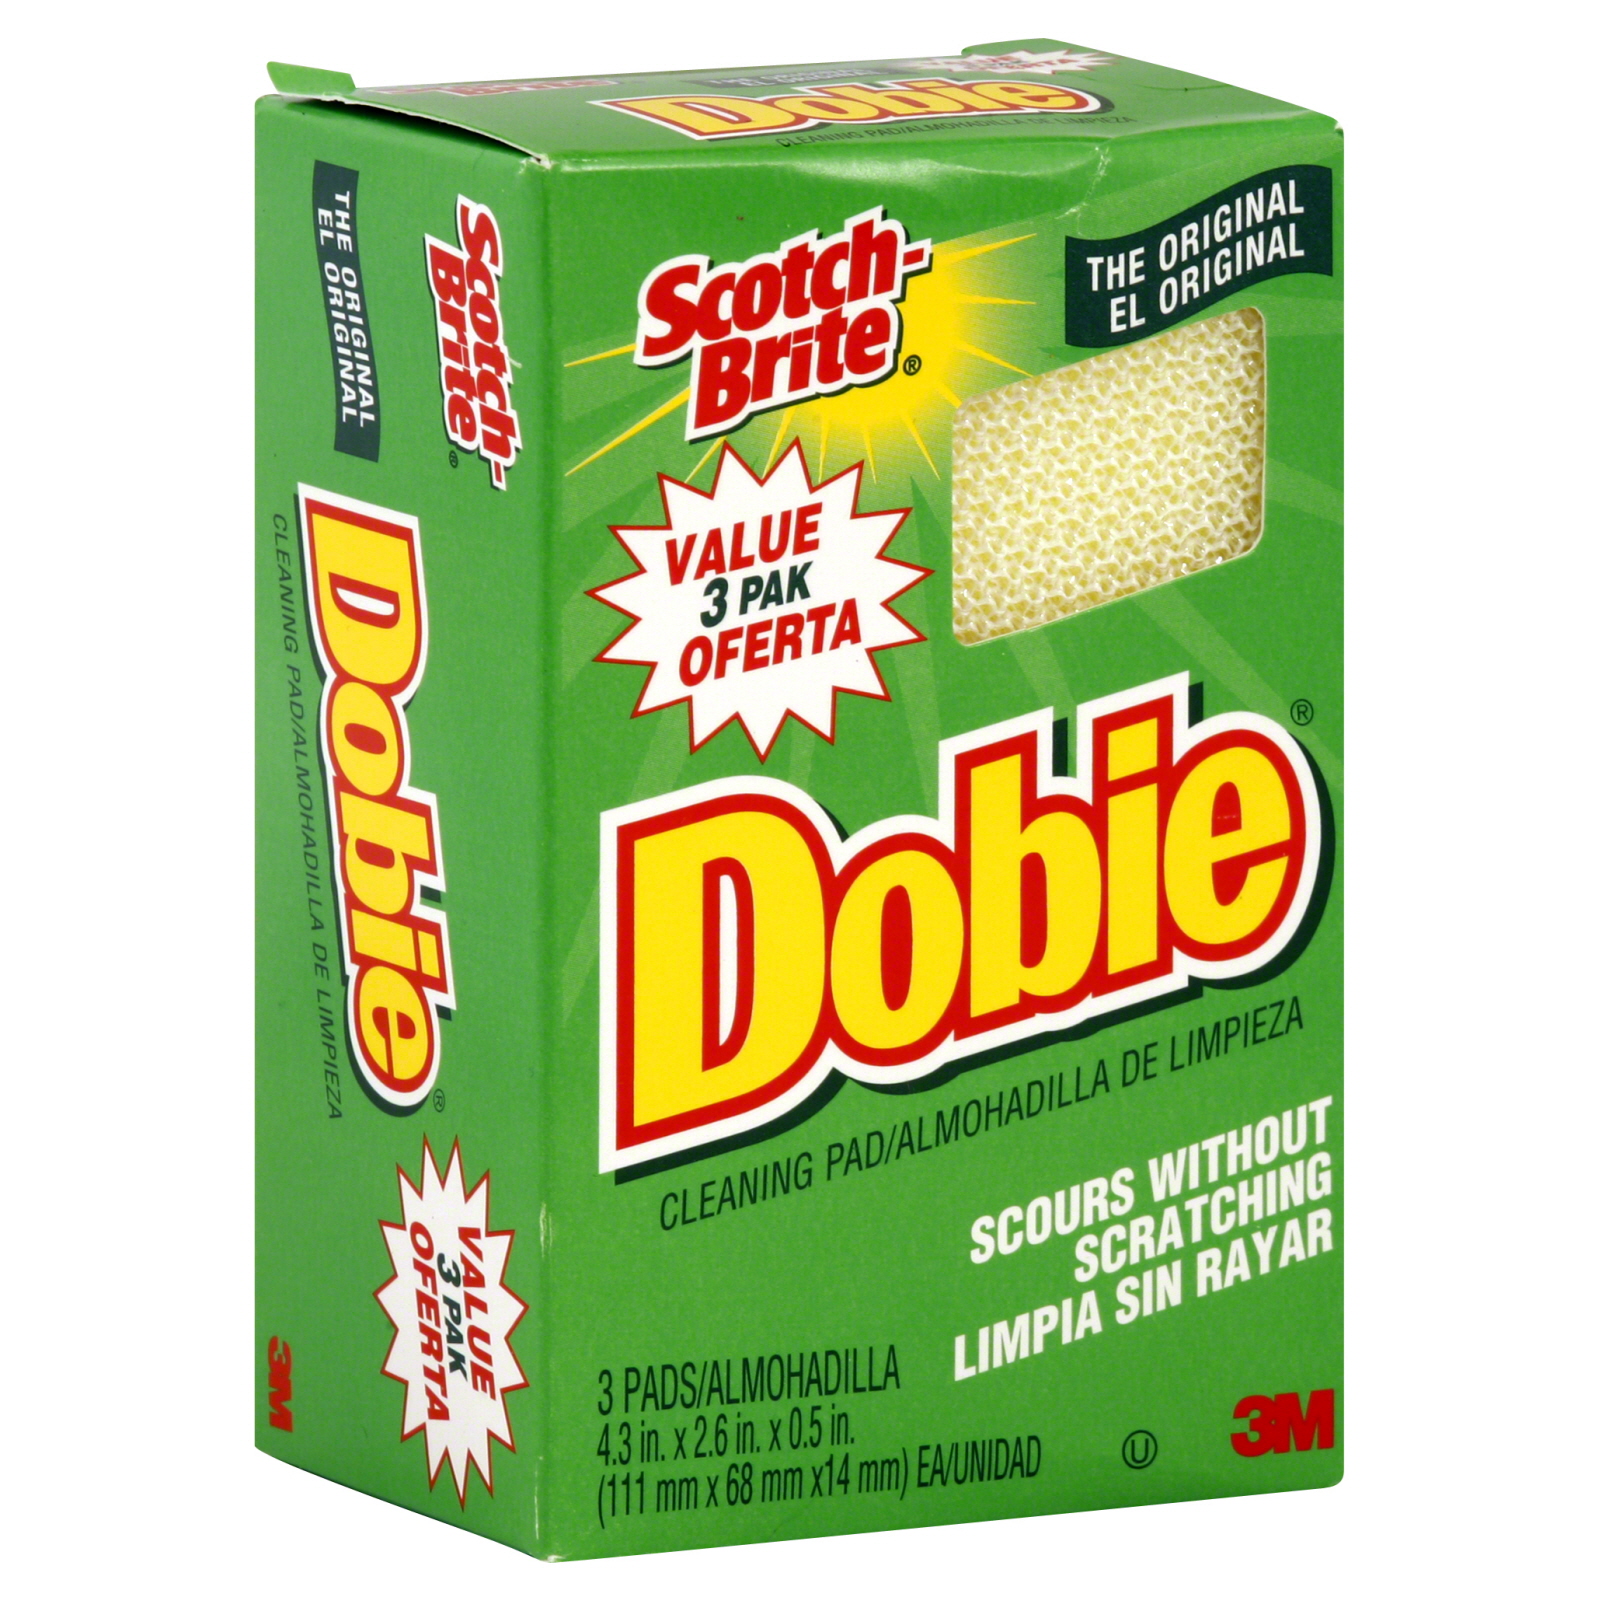 Scotch-Brite Dobie Cleaning Pad, Value Pak, The Original, 3 pads